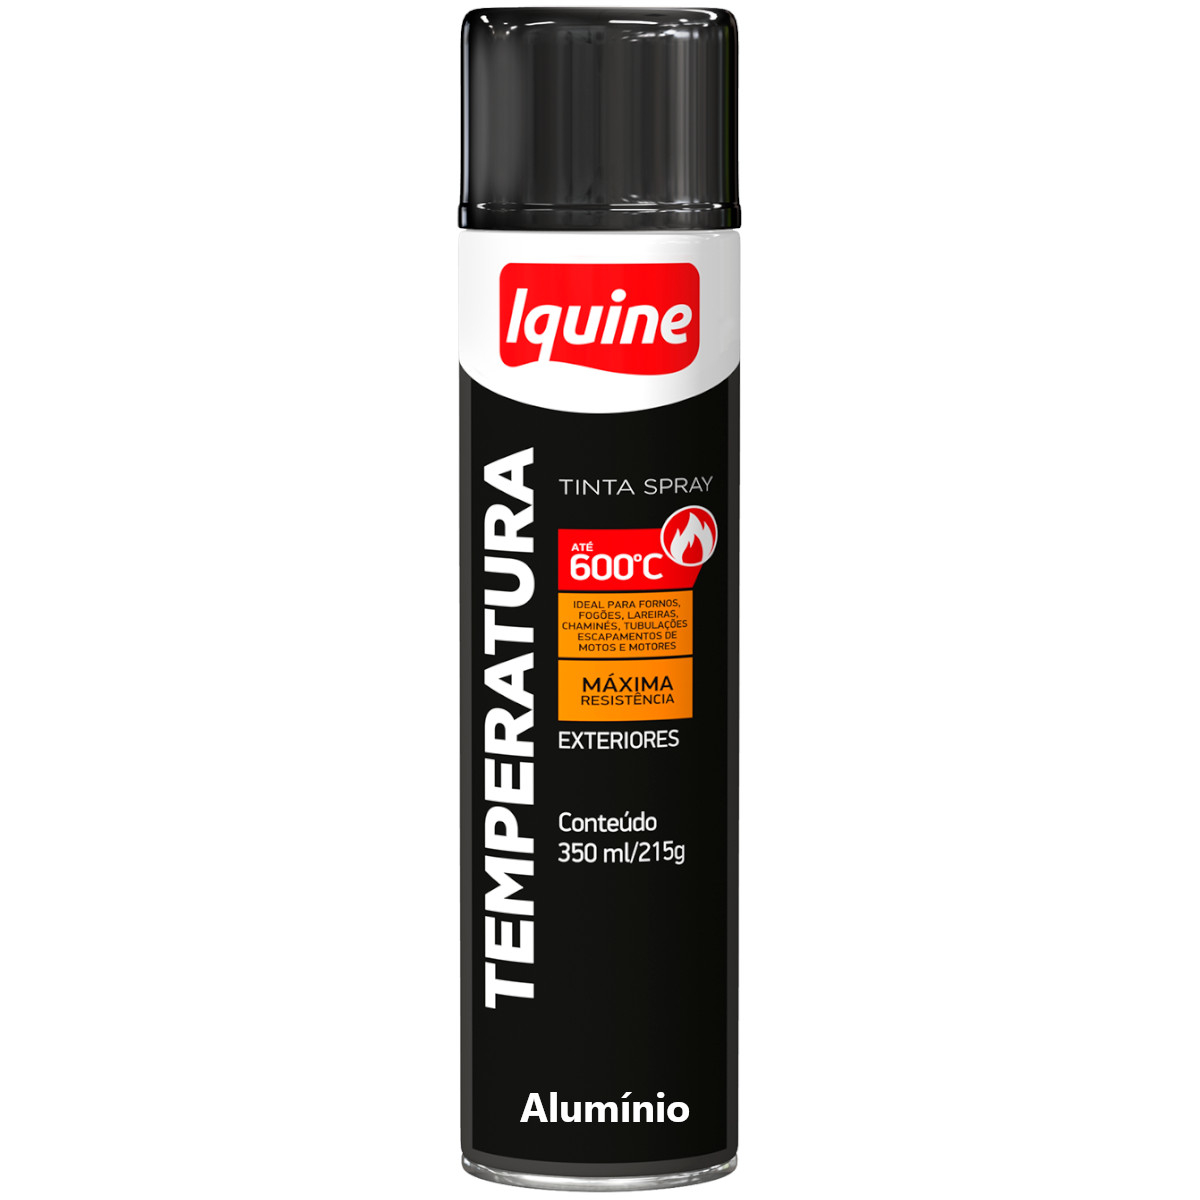 Tinta Spray Alta Temperatura 600 graus Aluminio Iquine